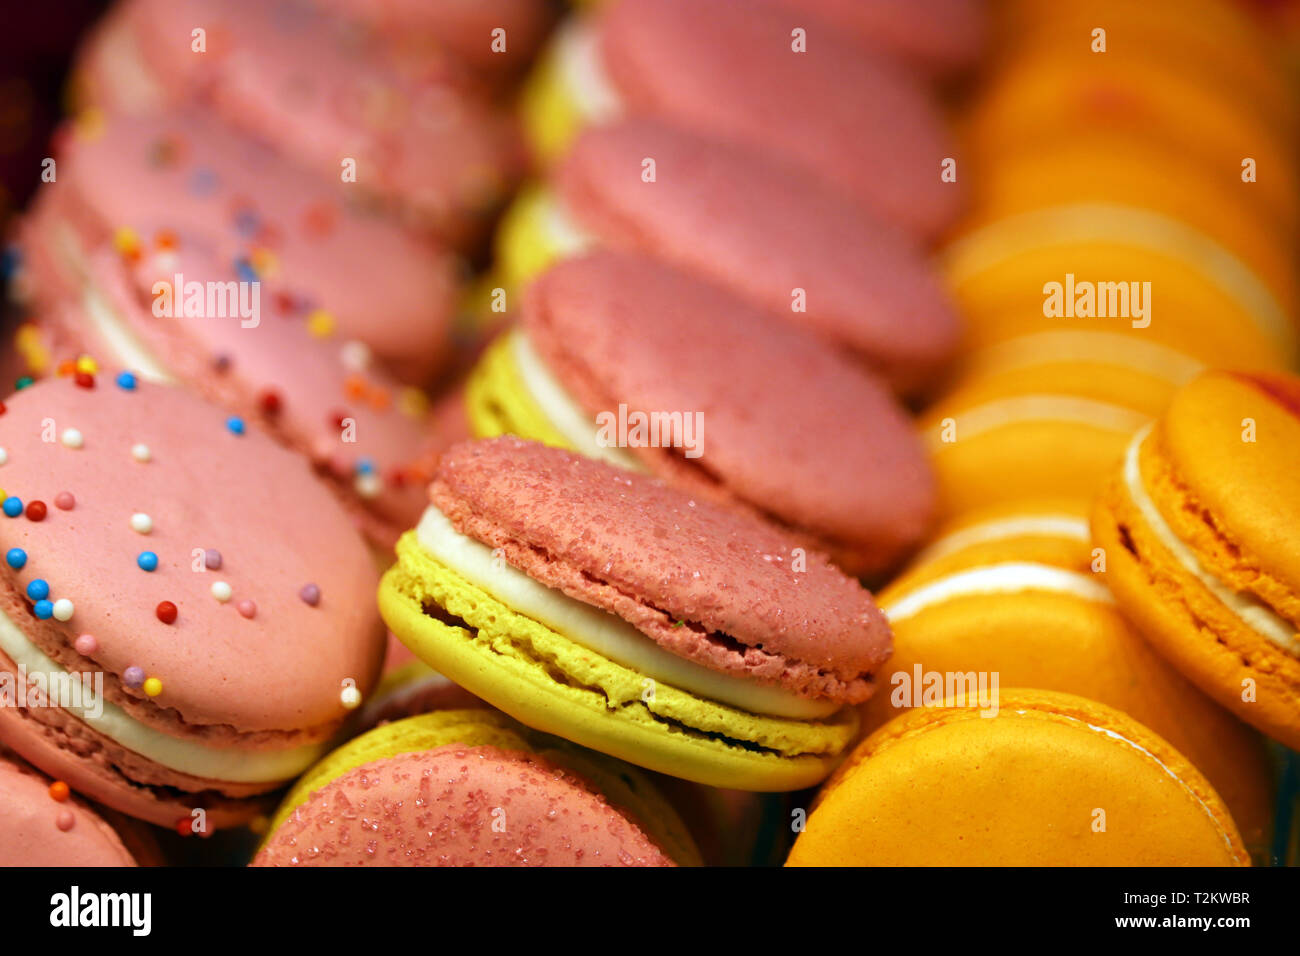 Makronen in einer Reihe, bunten süßen Hintergrund. Pink, Gelb und Orange almond Cookies mit Füllung, helle Farben Stockfoto